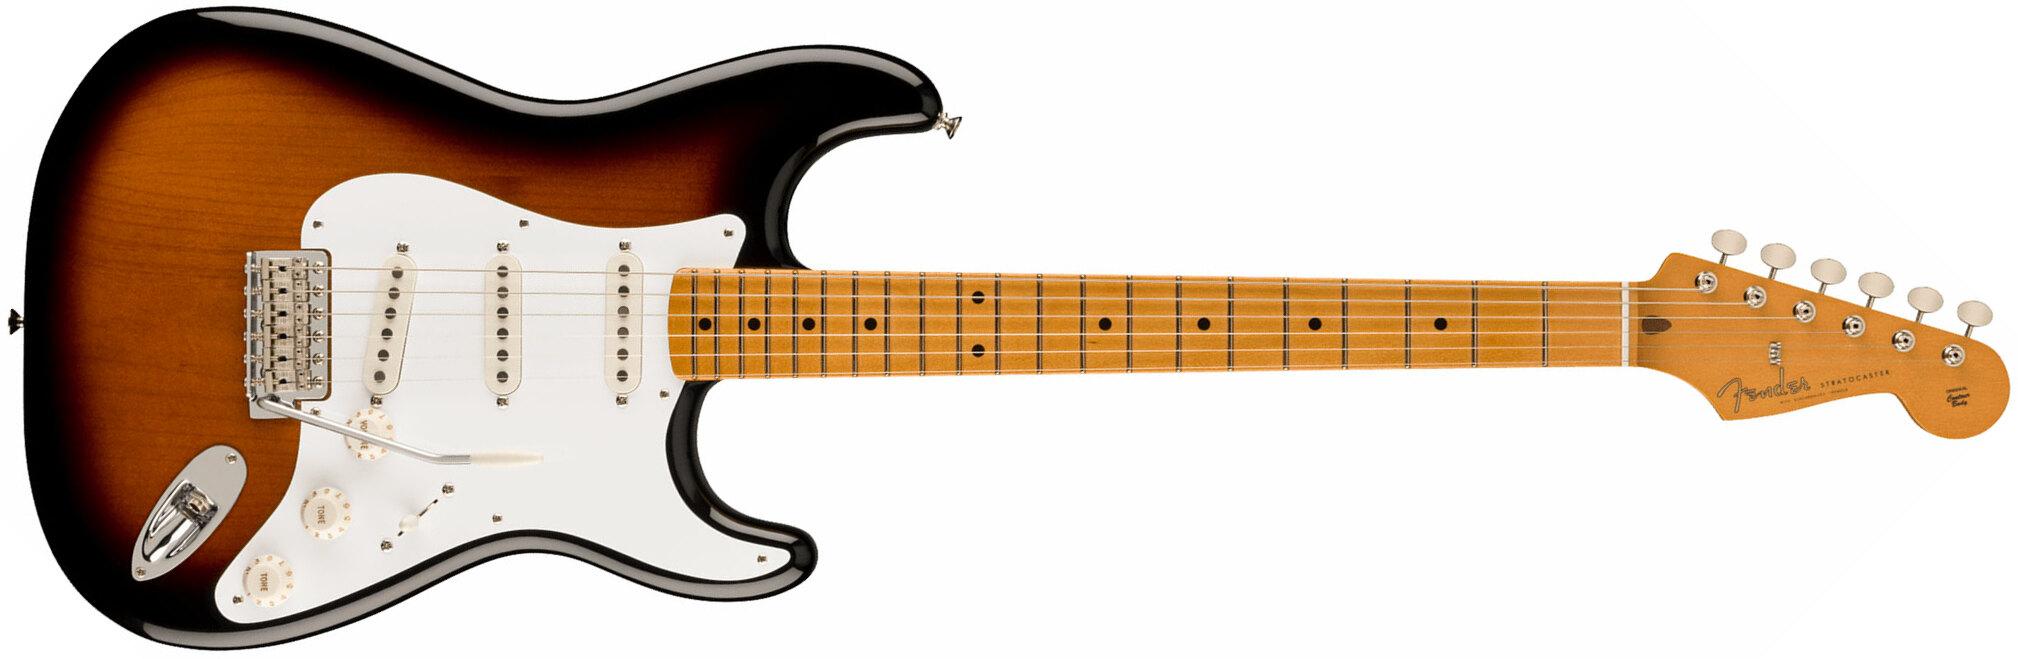 Fender Strat 50s Vintera 2 Mex 3s Trem Mn - 2-color Sunburst - Elektrische gitaar in Str-vorm - Main picture